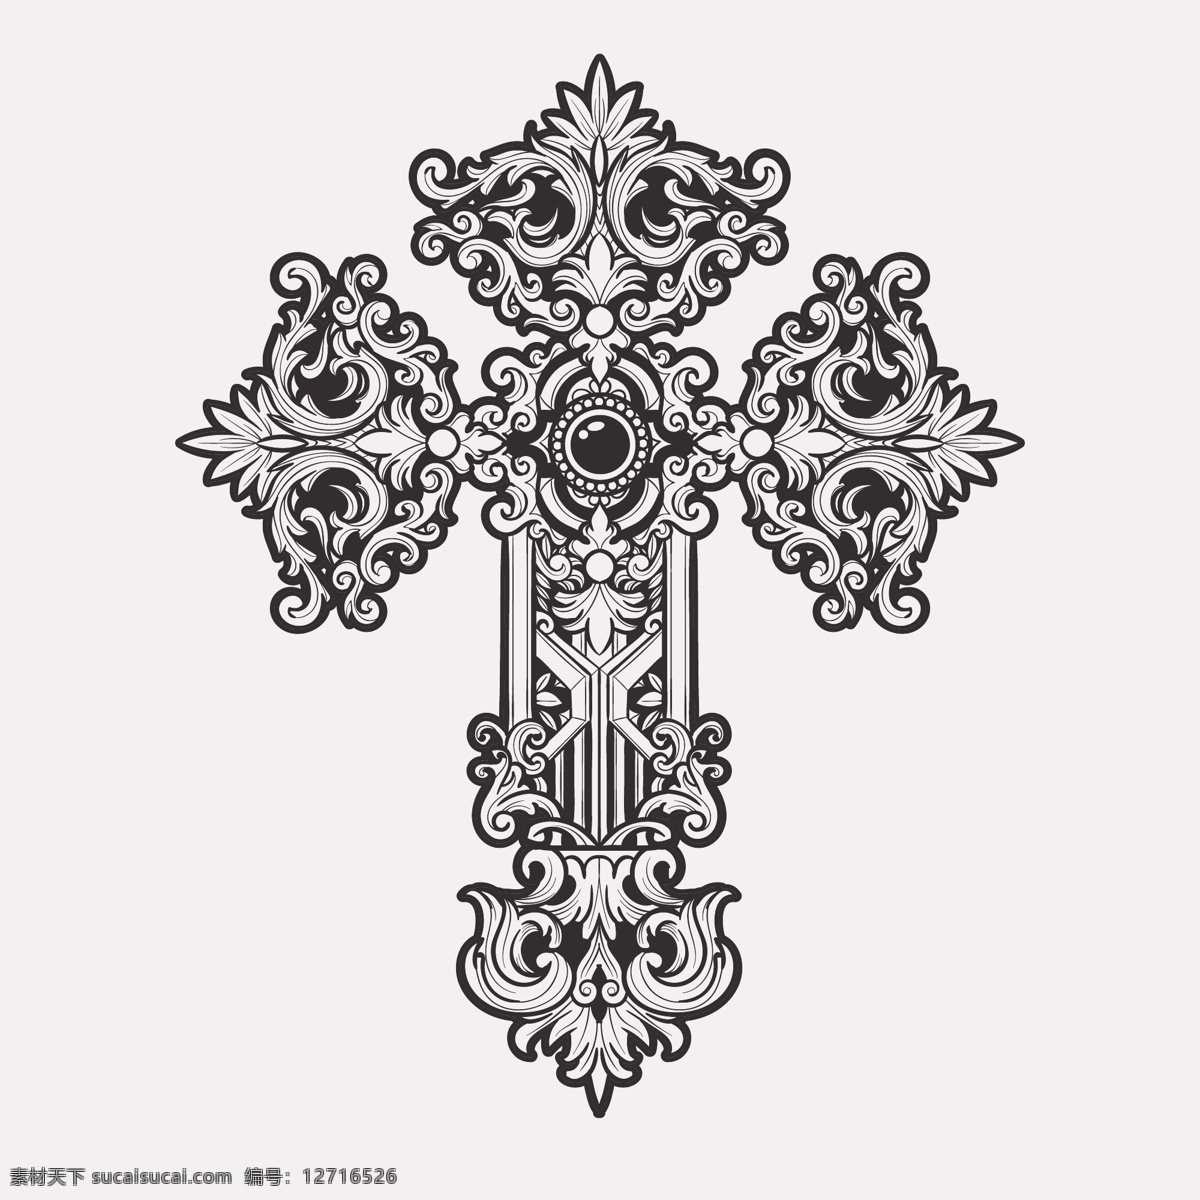 十字花纹 十字架 信仰 教会 教堂 耶稣 宗教文化 手绘十字架 十字架图标 矢量插画 文化艺术 宗教信仰